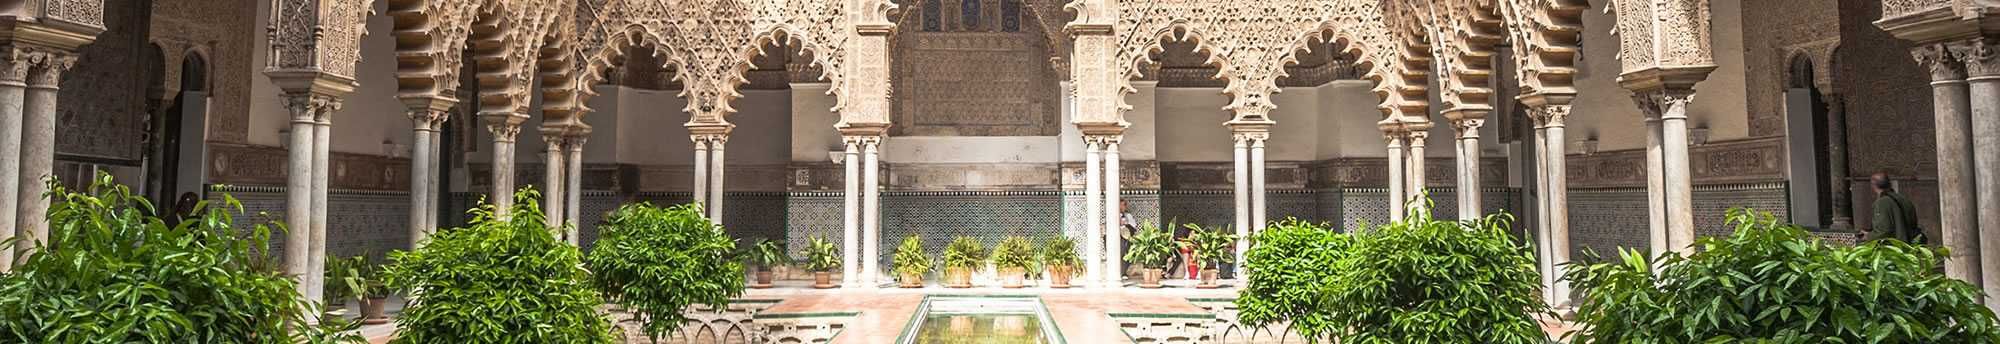 Visita Guiada al Alcazar, Giralda y Catedral de Sevilla